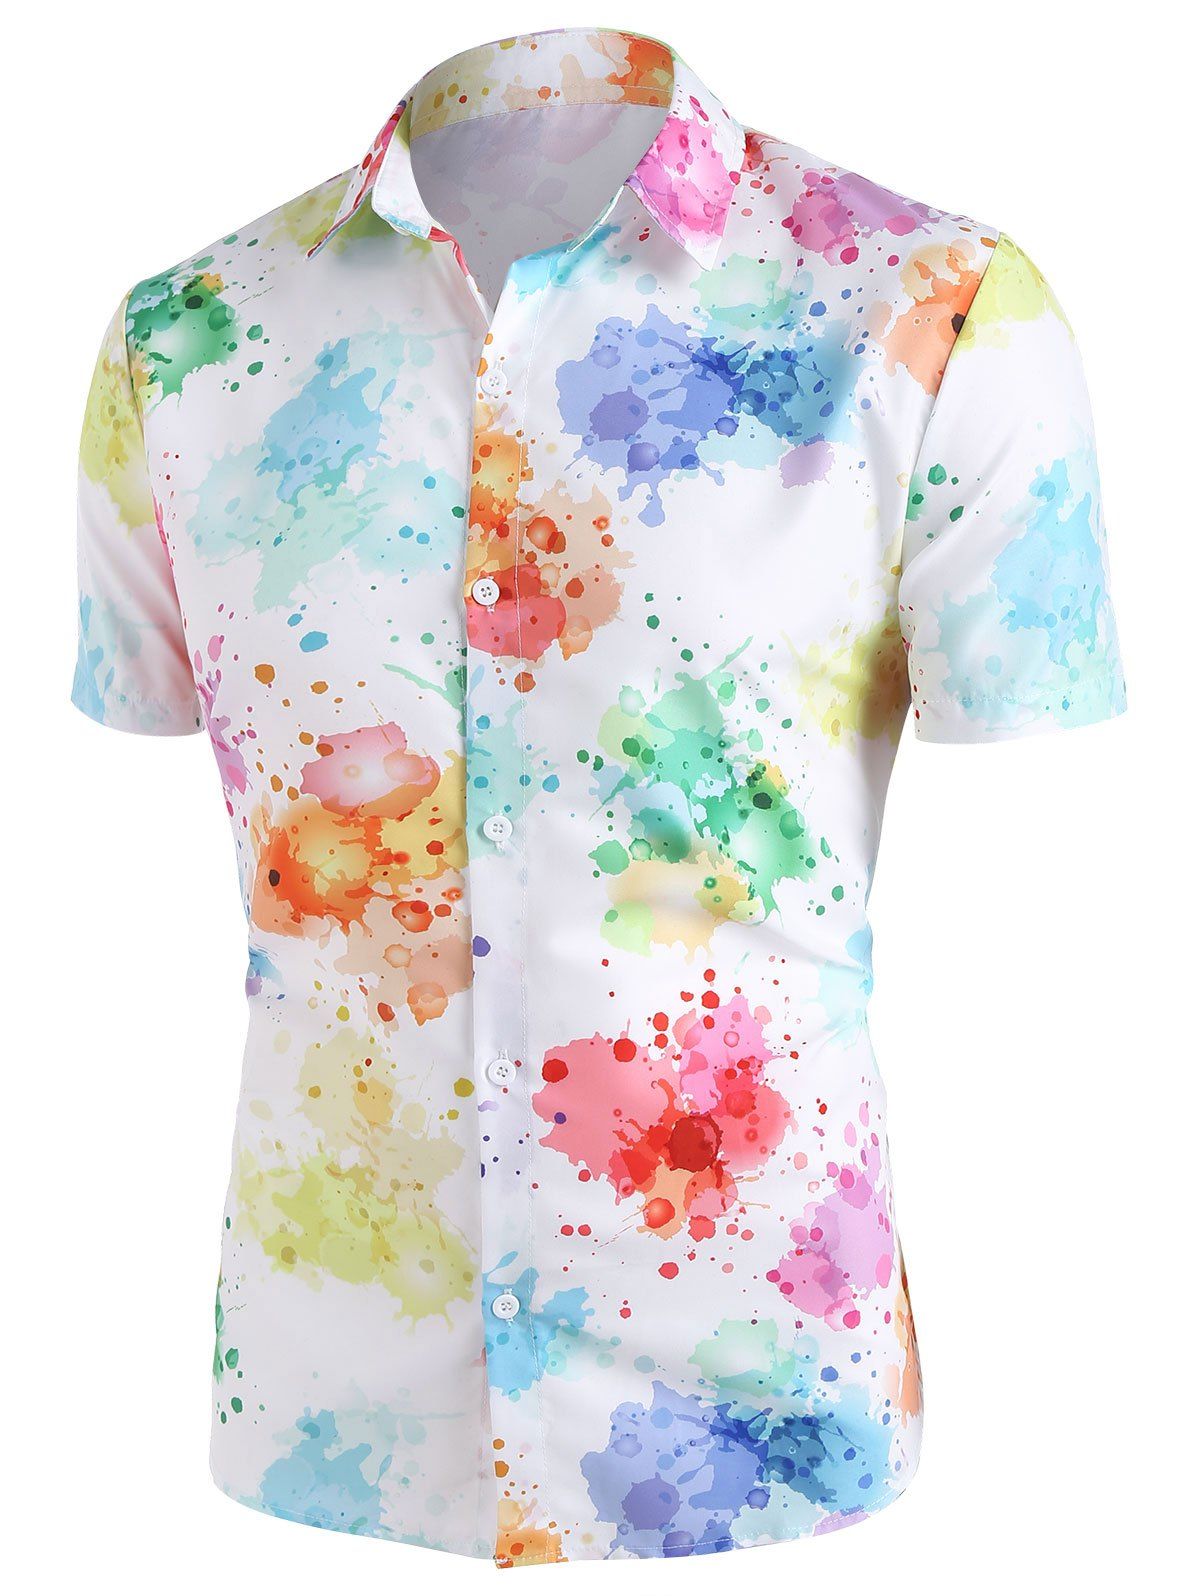 Splatter Paint Short Sleeve Shirt - multicolor A XXL